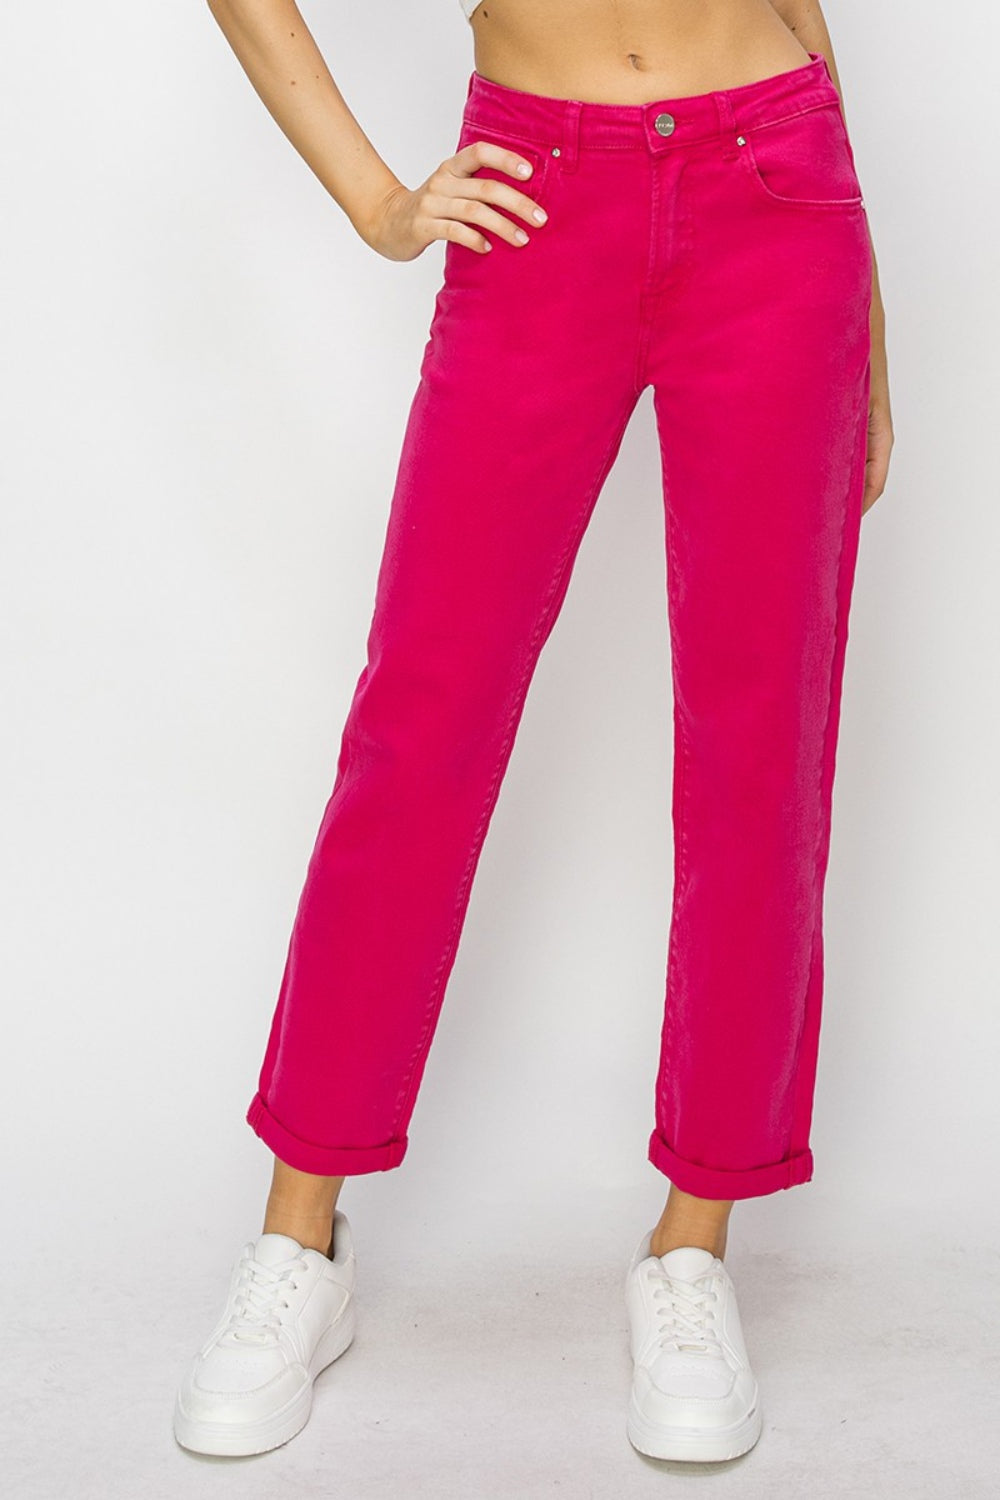 Hot Pink High-Waist Straight Jeans | Risen